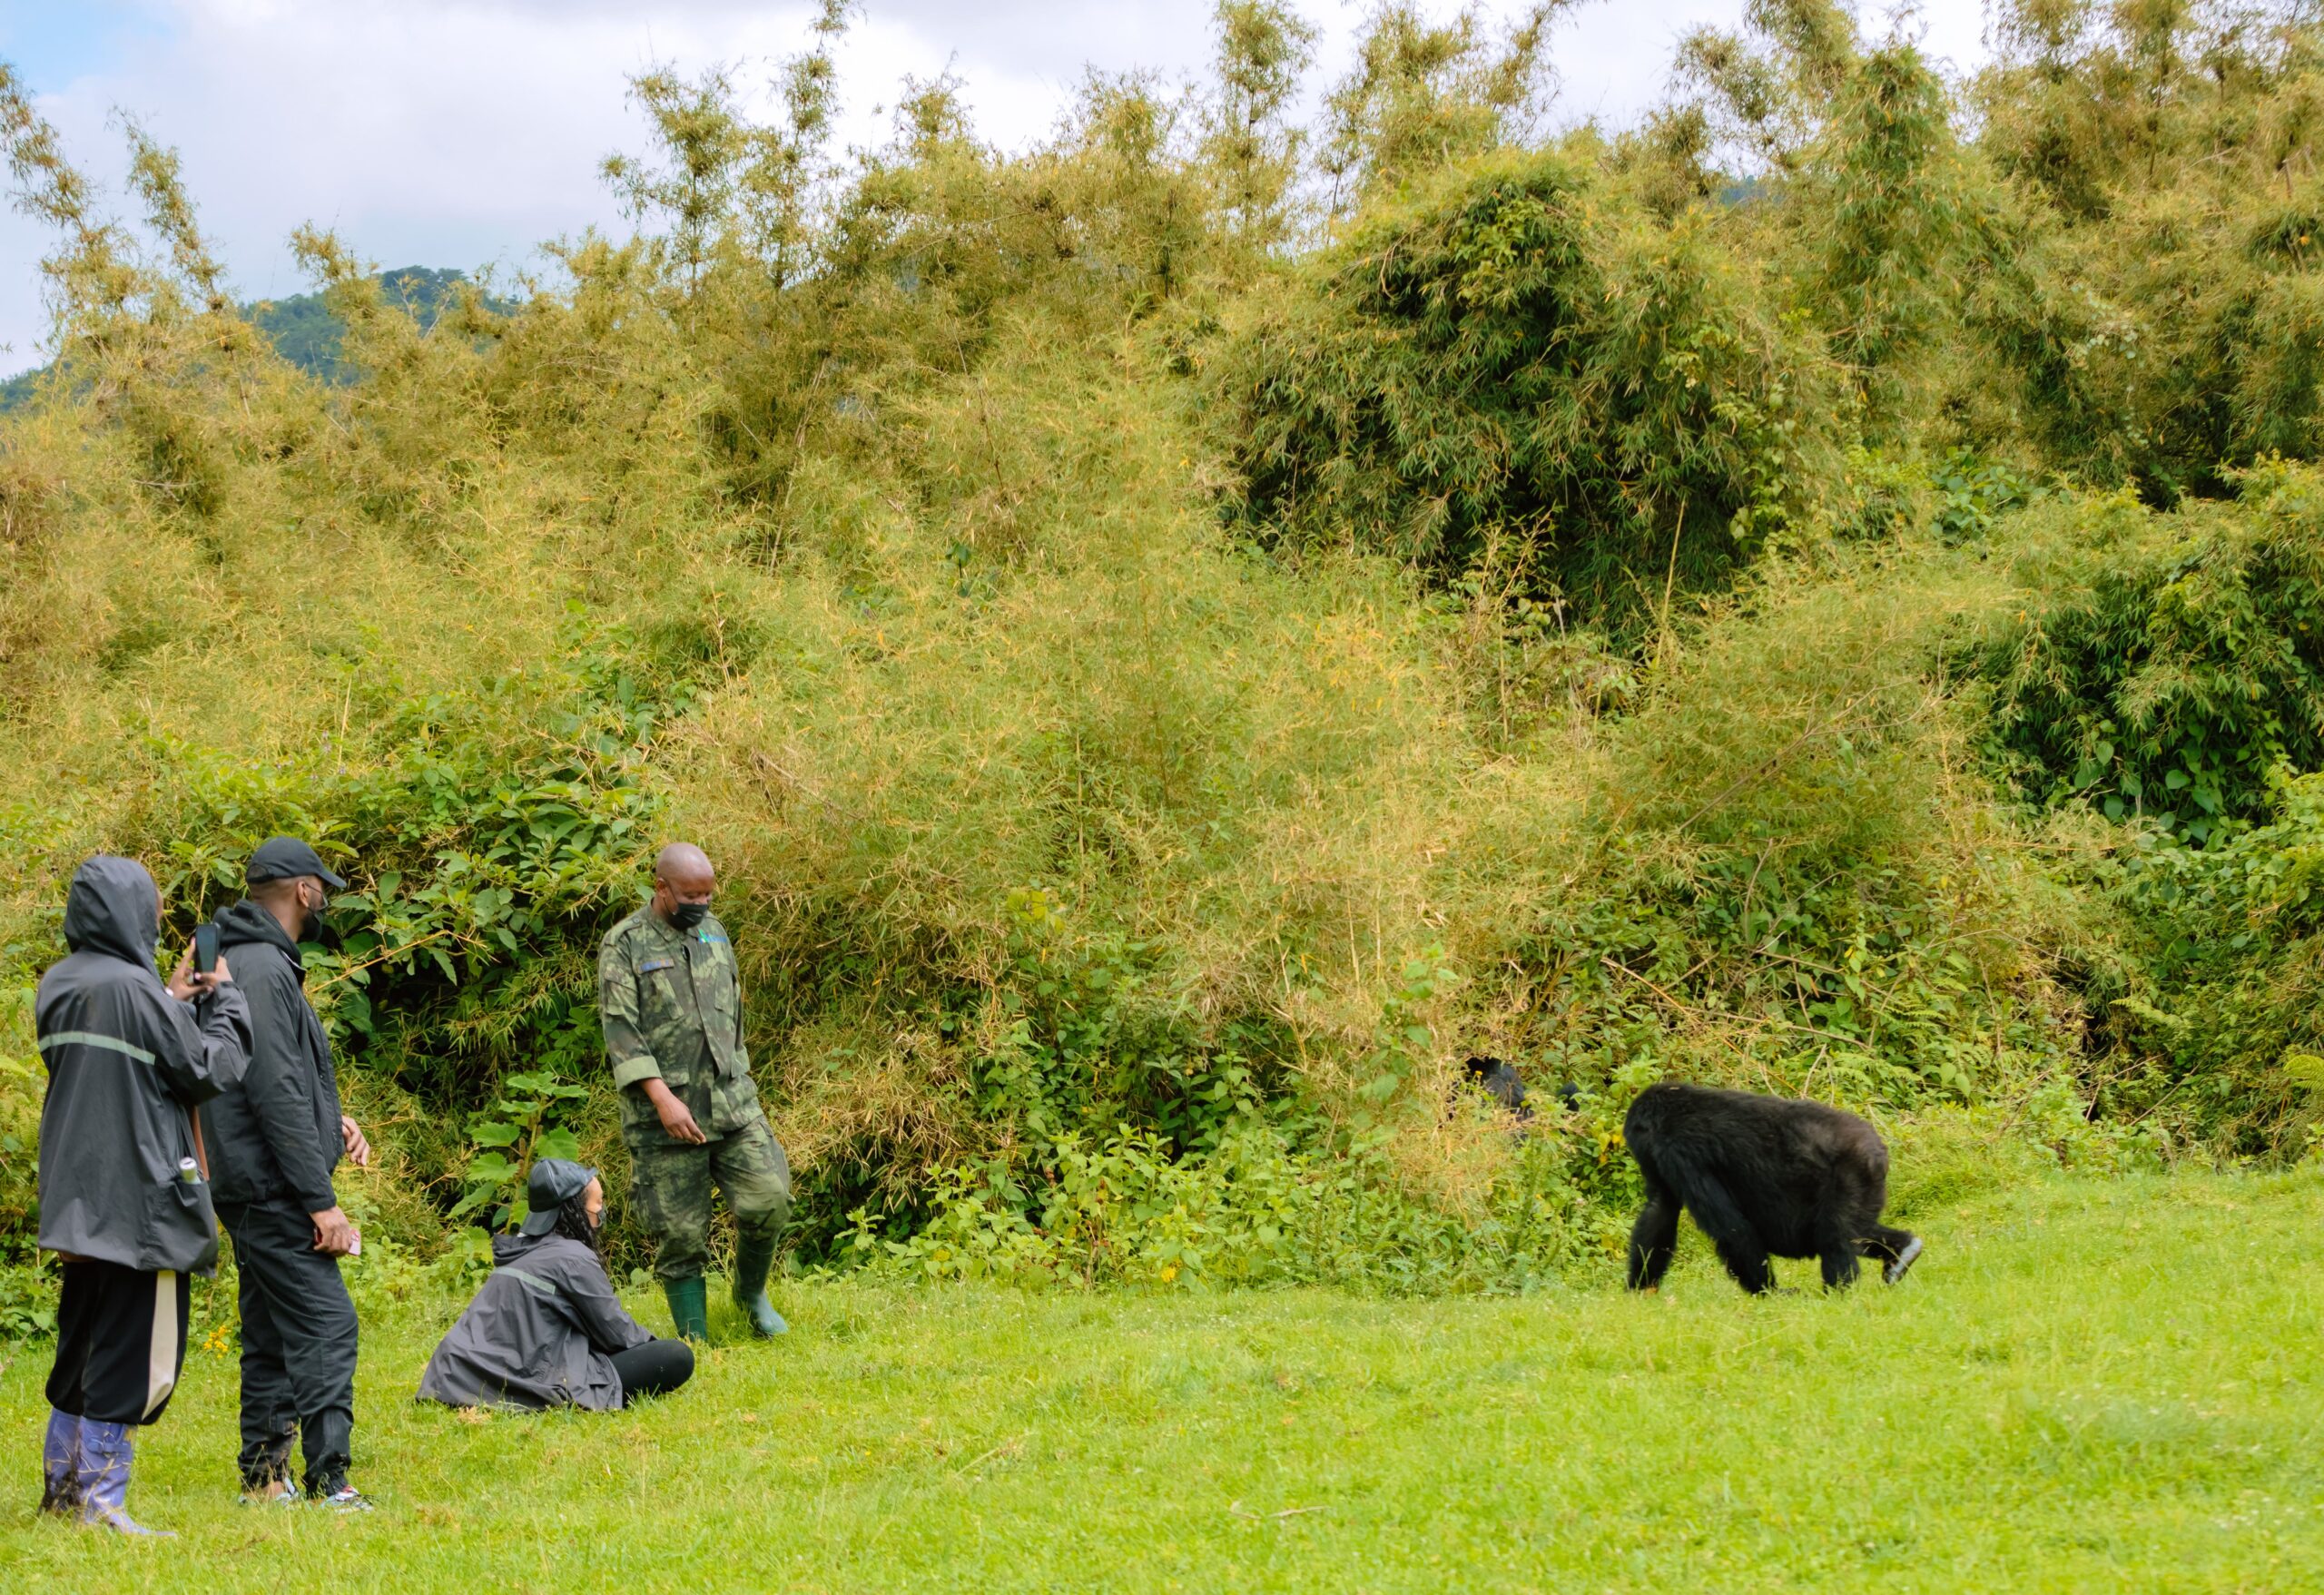 #gorillatrekking #Rwanda #shalomsafarisrwanda